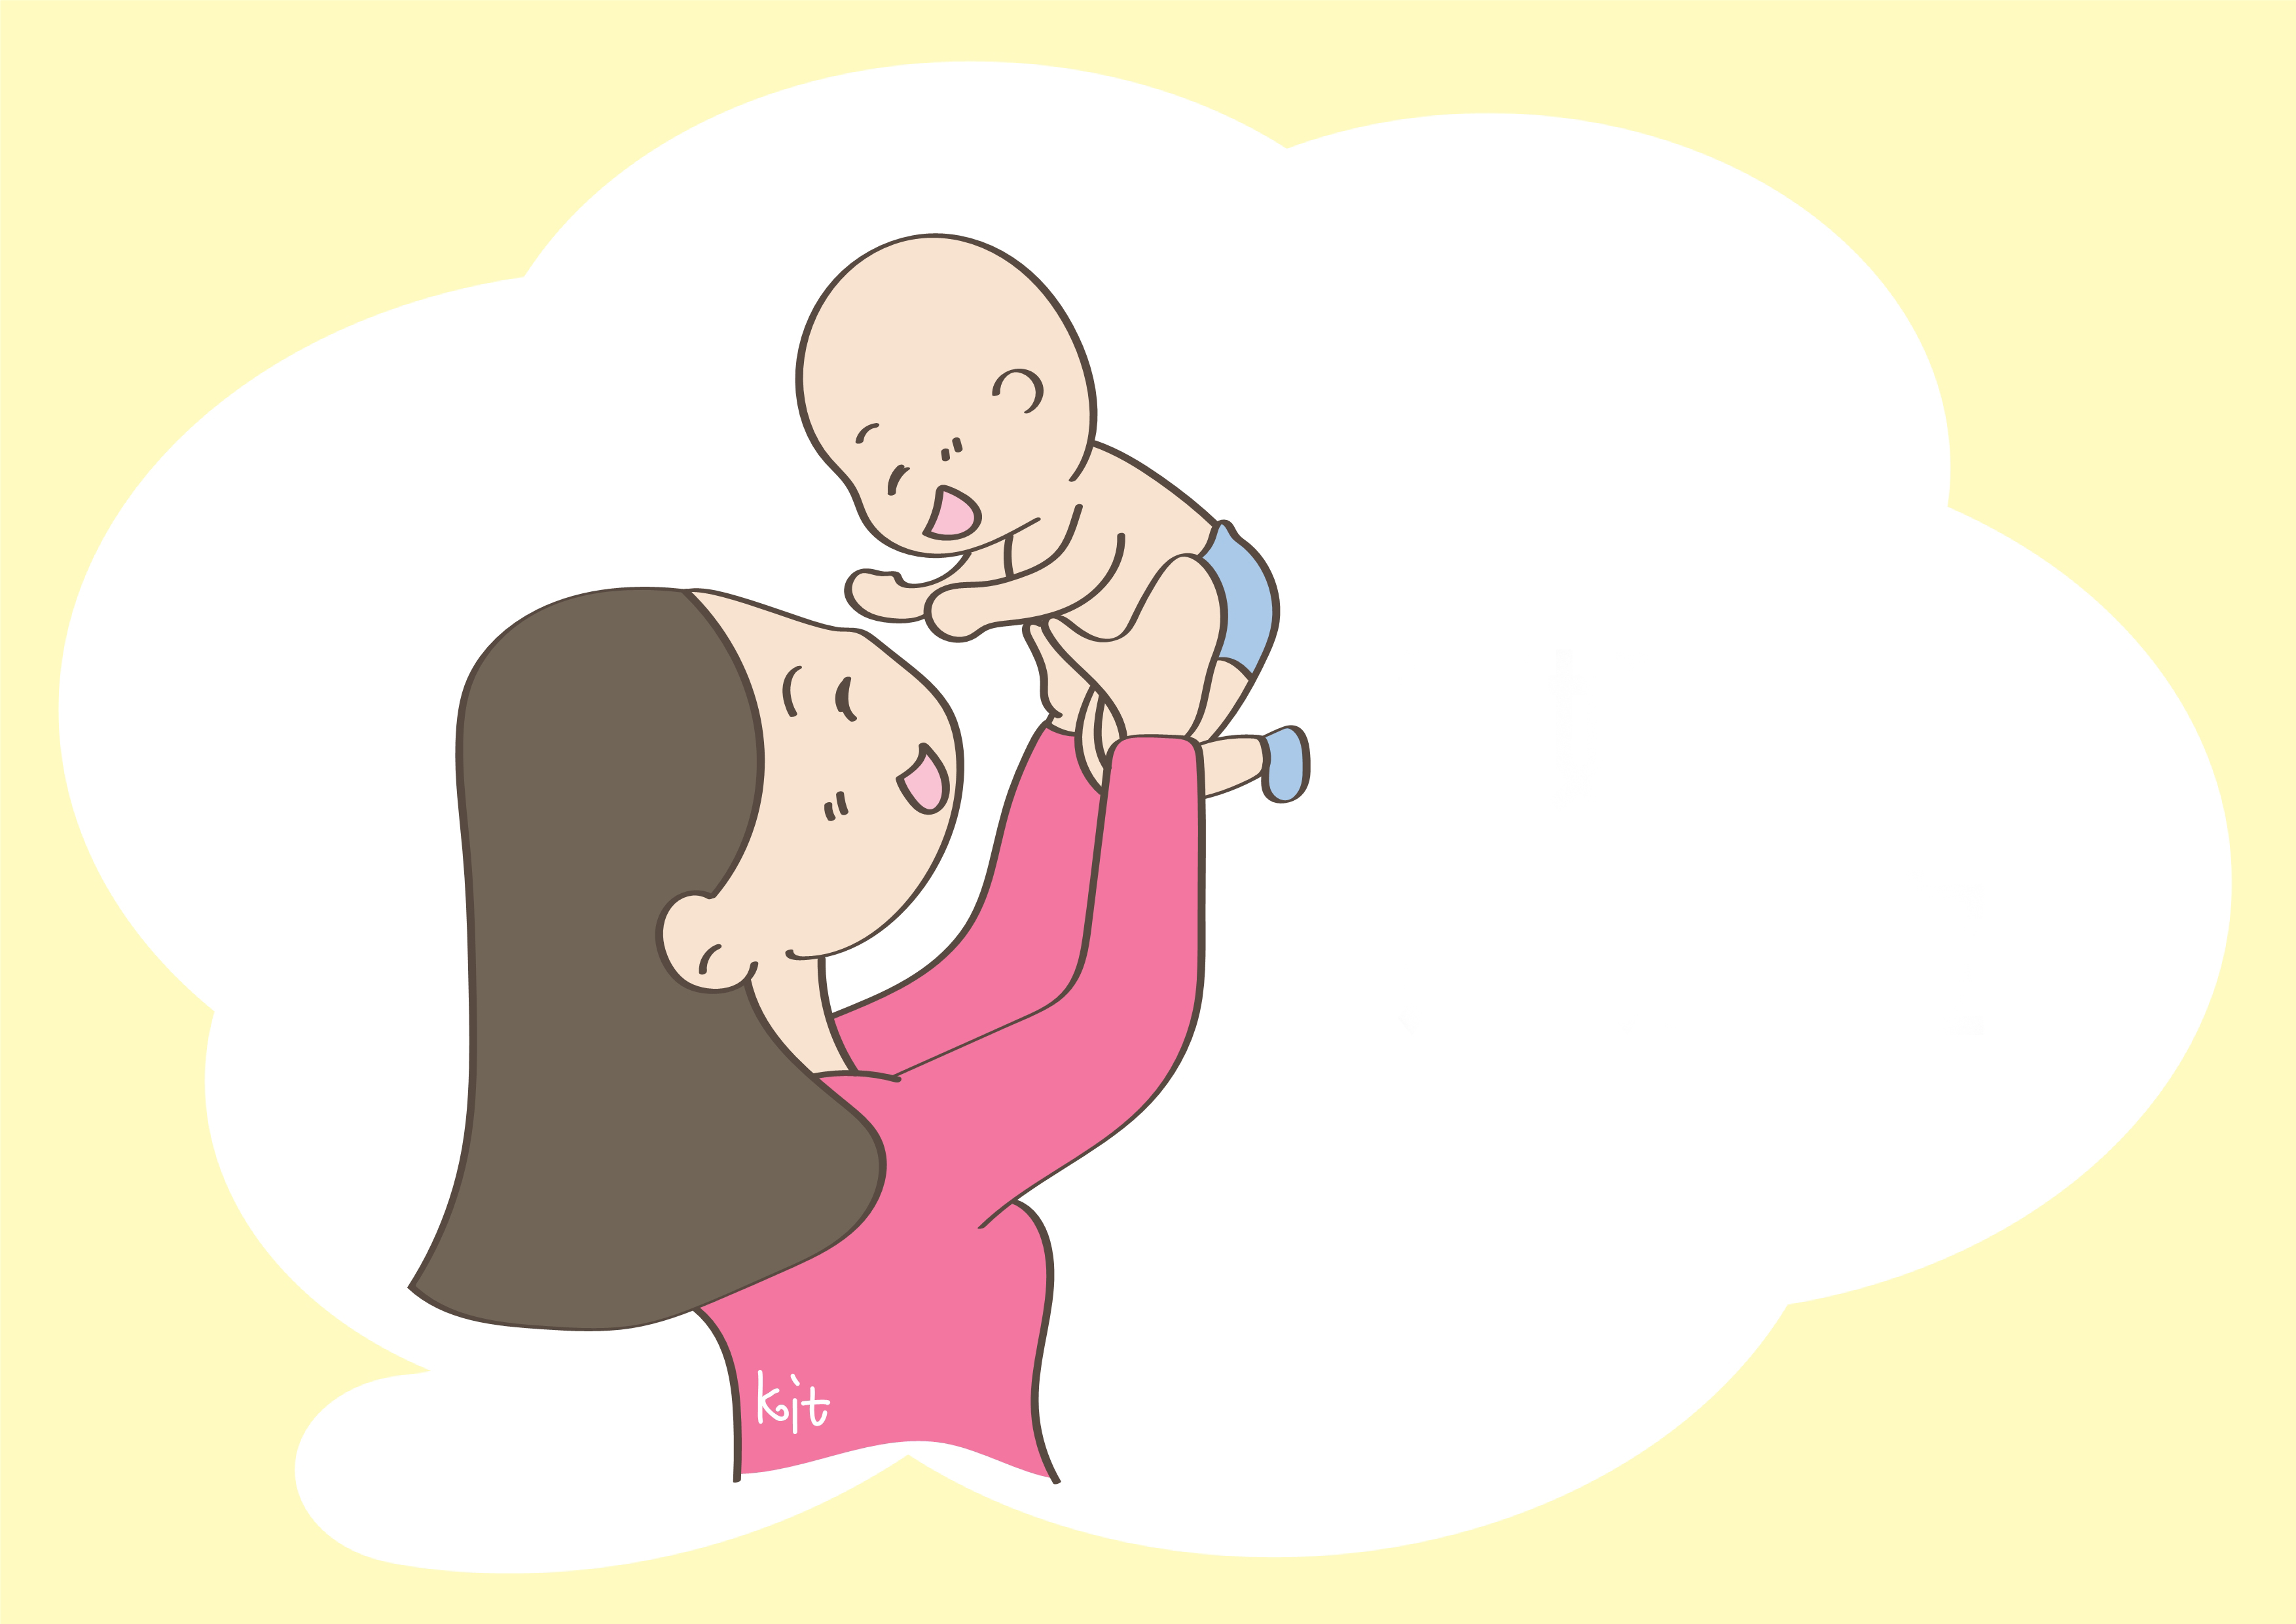 刚出生的宝宝三个部位不能摸，会影响发育，父母快住手